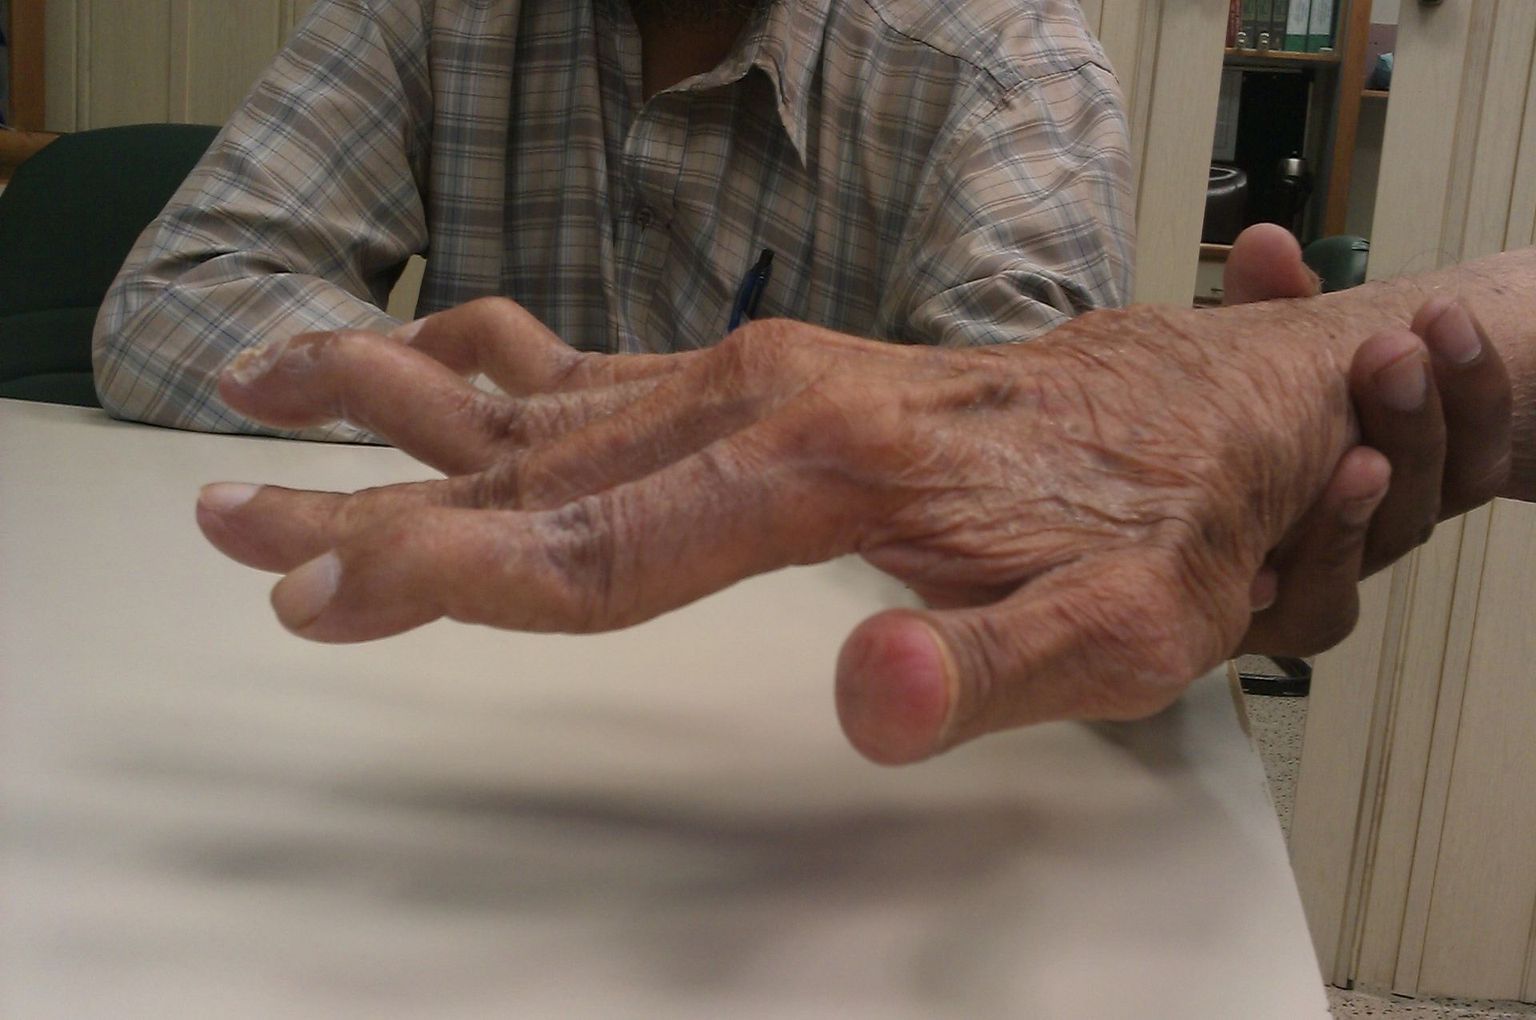 Sõrmeliigeste deformeerumine luigekaelakujuliseks võib olla tingitud liigesehaigustest, näiteks reumatoidartriidist (fotol) või traumast.